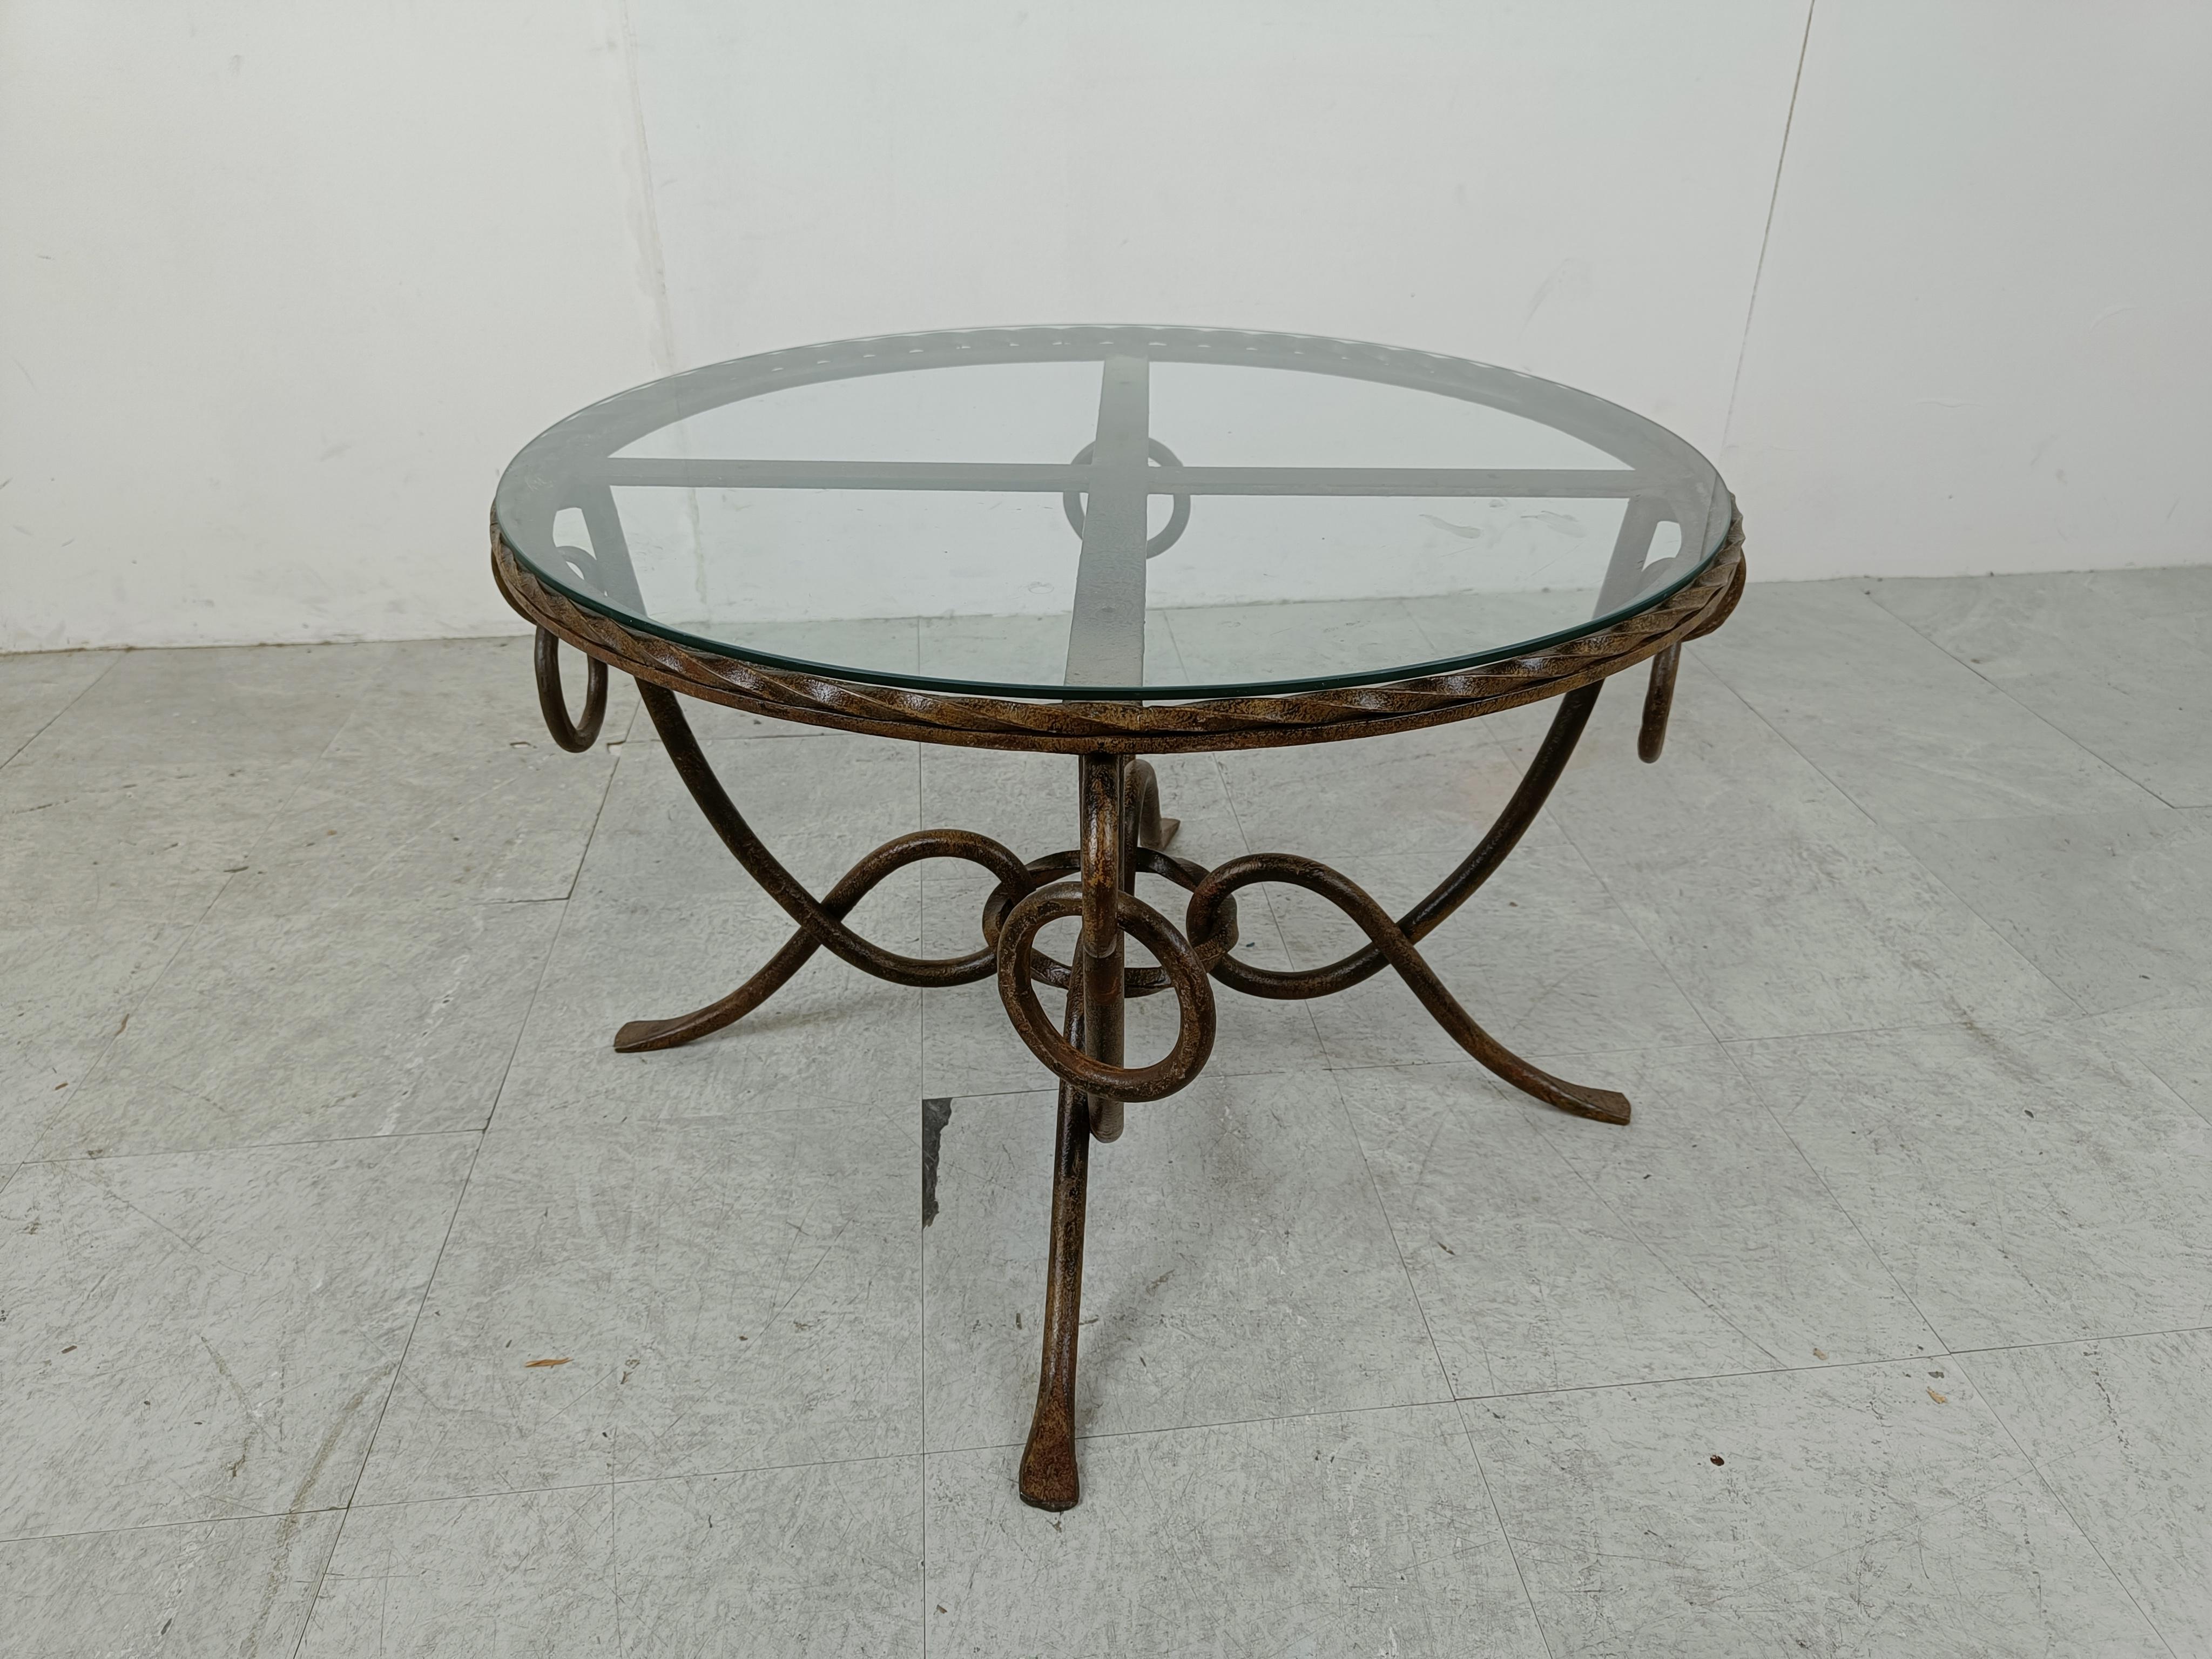 Vintage Couchtisch, entworfen von René Drouet (1899-1993).

Der Tisch hat ein vergoldetes Schmiedeeisengestell und eine Glasplatte.

Großartige Handwerkskunst.

1940er Jahre - Frankreich

Abmessungen:
Höhe: 47cm/18.50